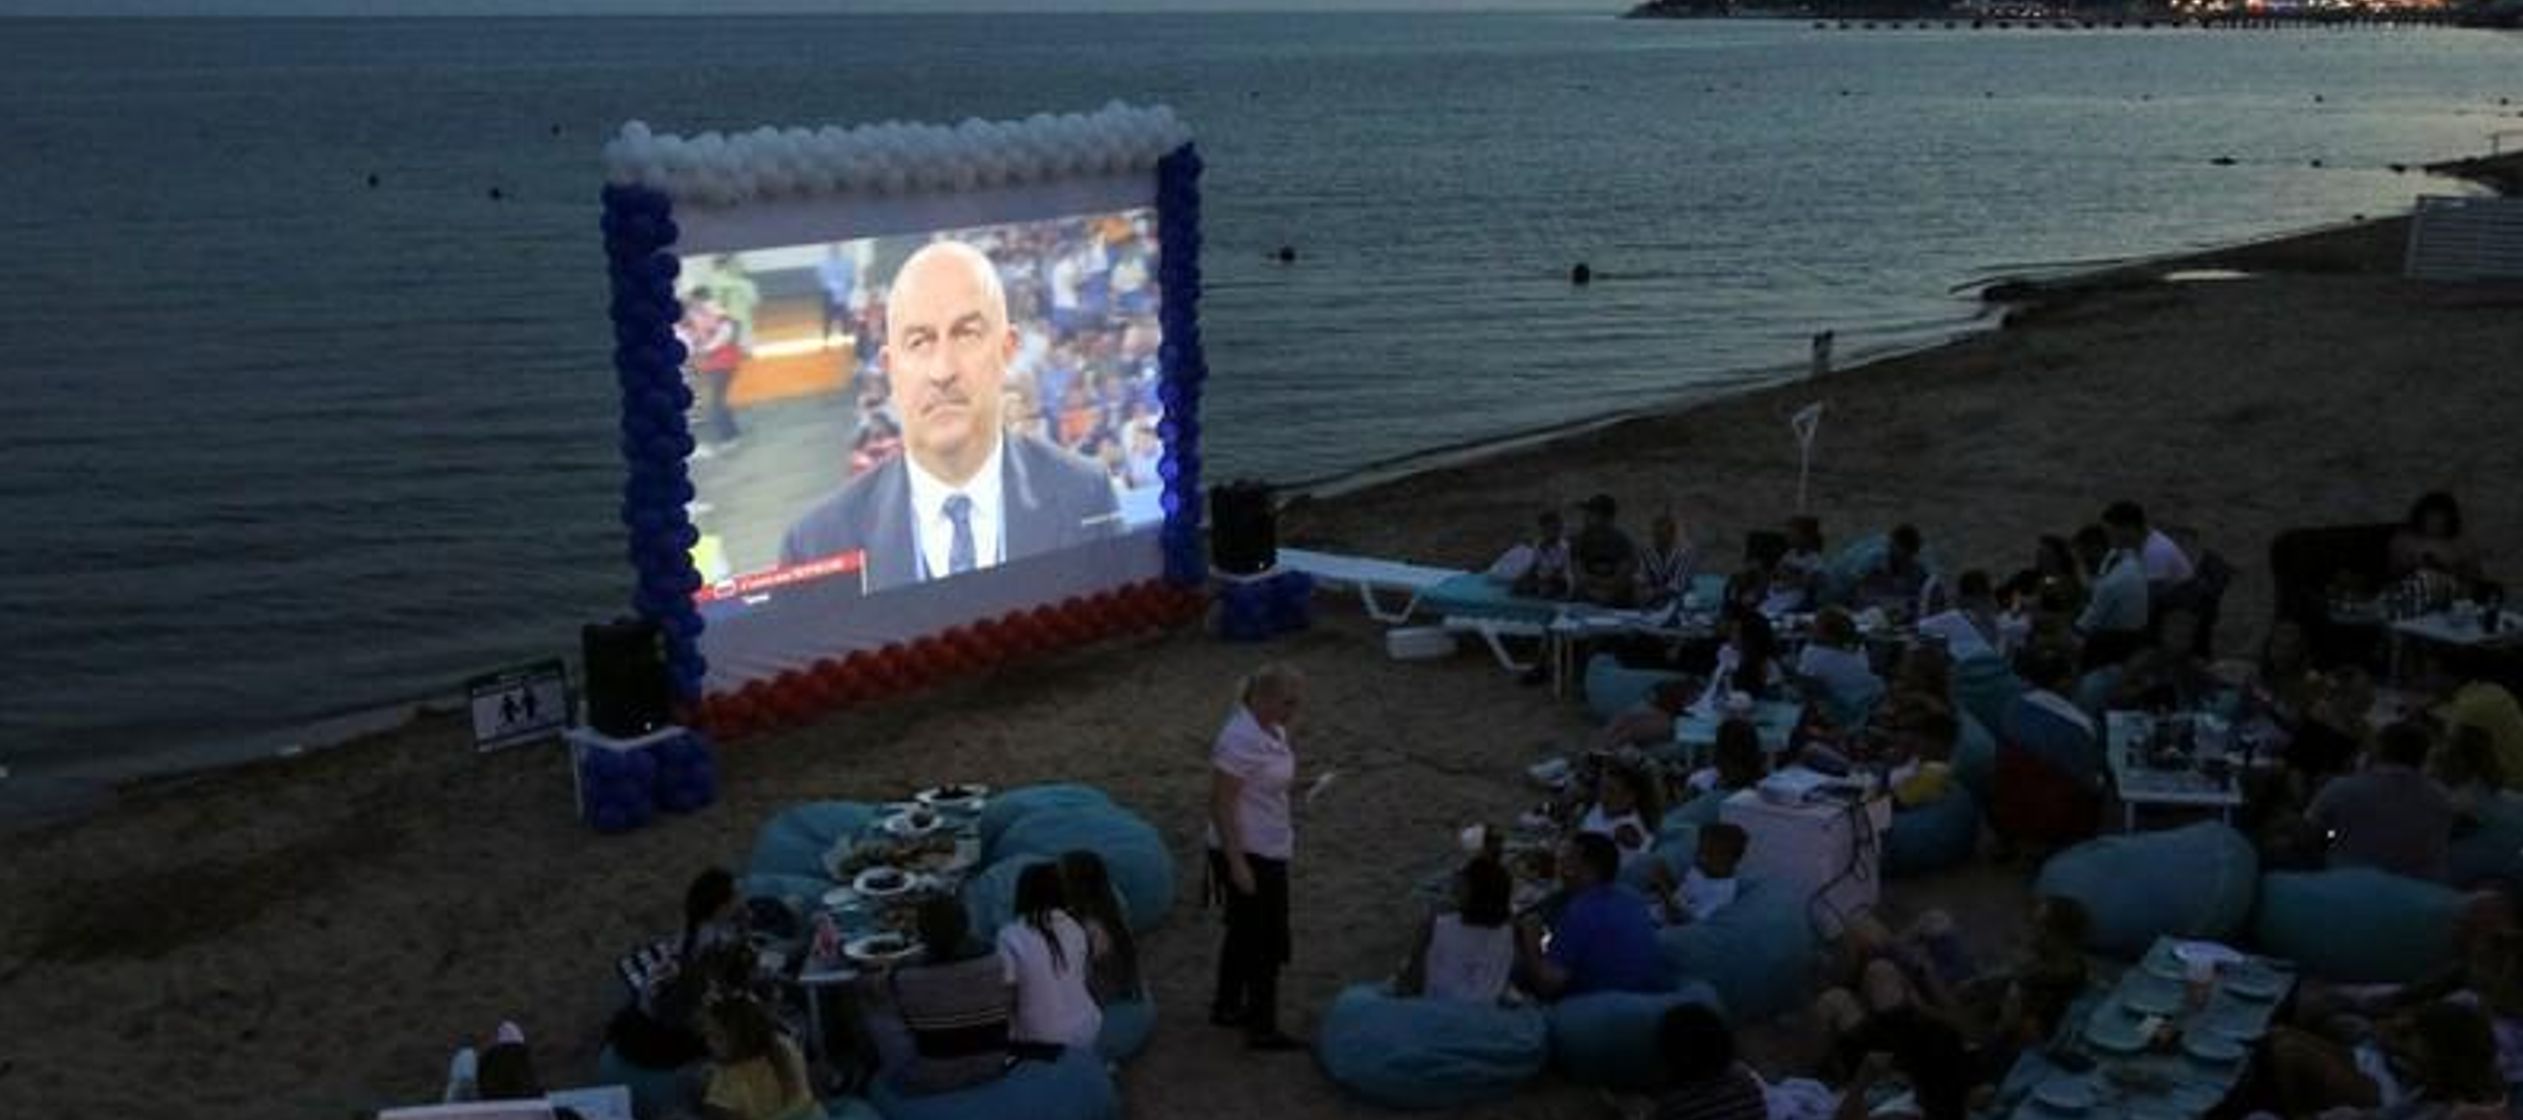 Las proyecciones públicas implicaron un compromiso con las reglas de la Copa Mundial,...